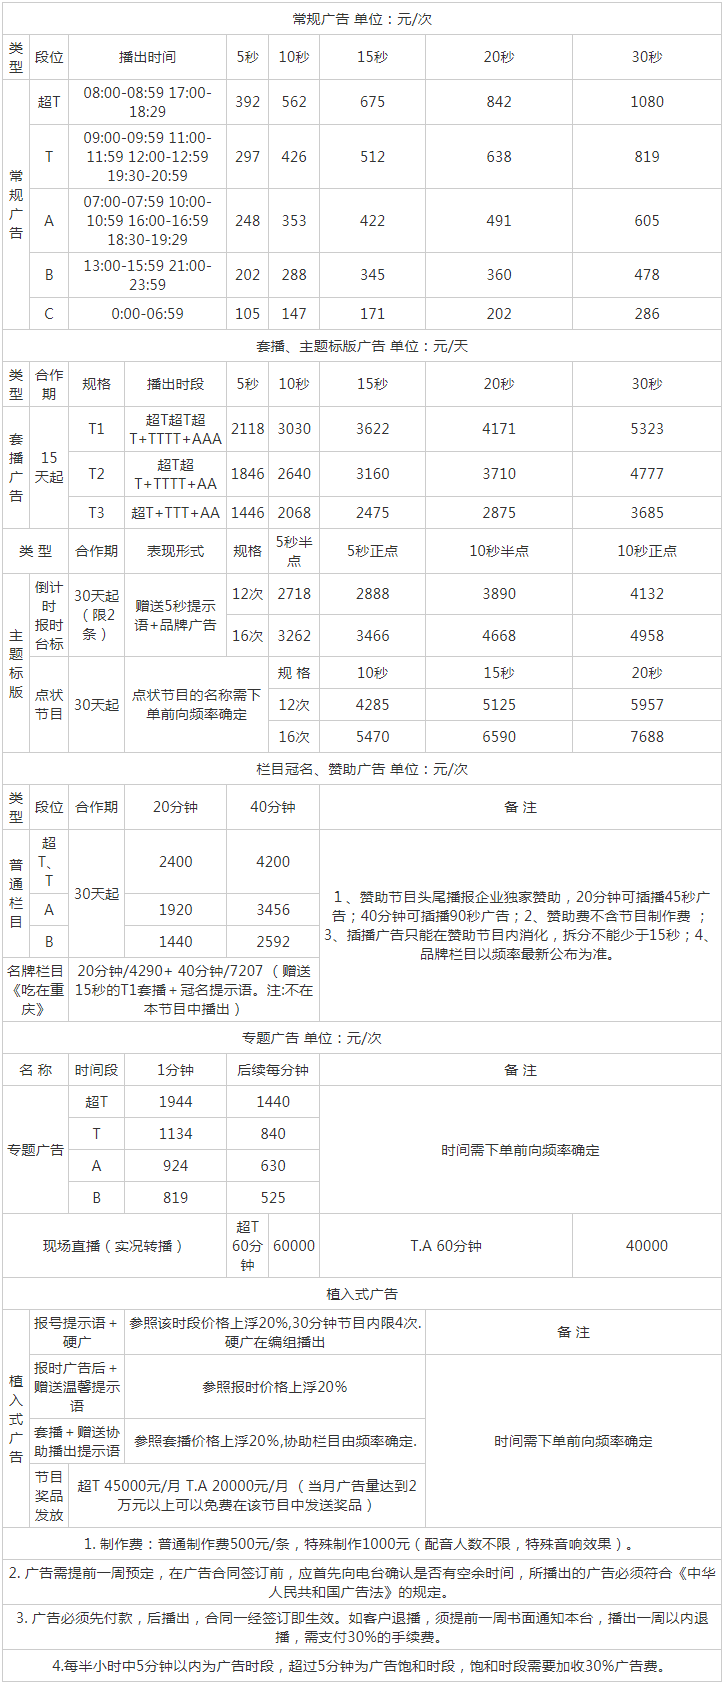 2011重庆人民广播电台都市频率 FM93.8广告报价表.png